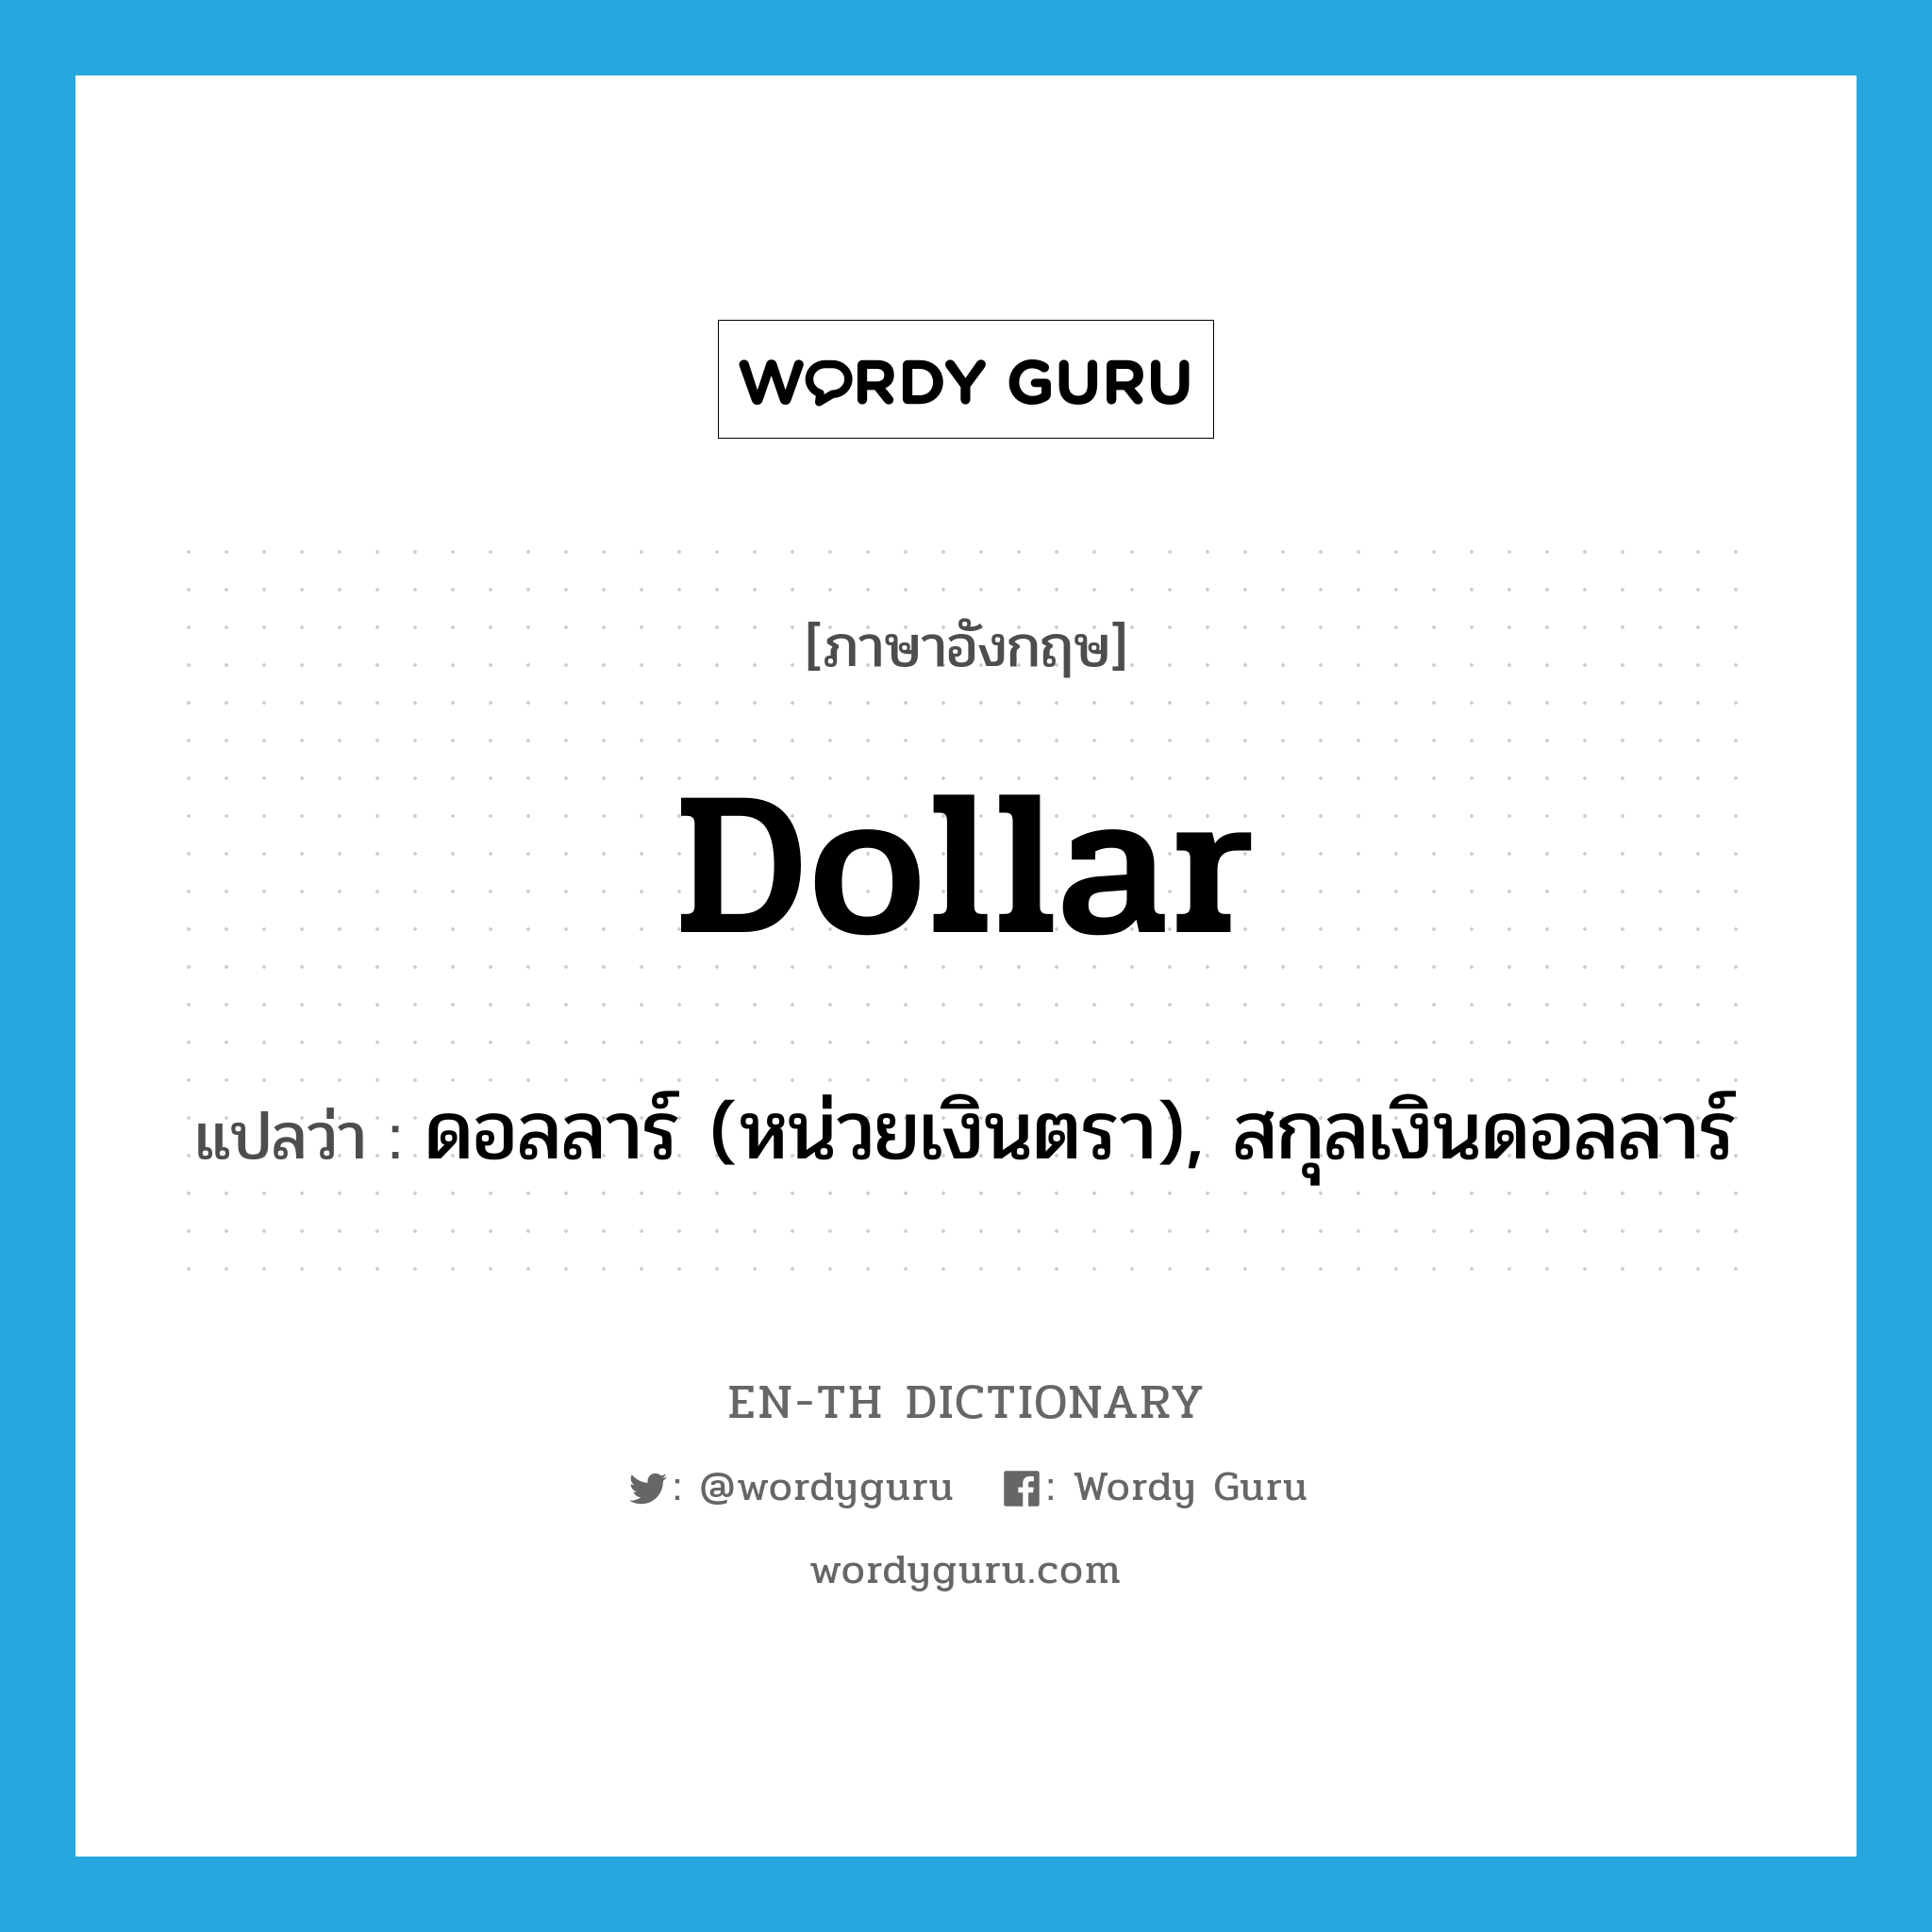 dollar แปลว่า?, คำศัพท์ภาษาอังกฤษ dollar แปลว่า ดอลลาร์ (หน่วยเงินตรา), สกุลเงินดอลลาร์ ประเภท N หมวด N